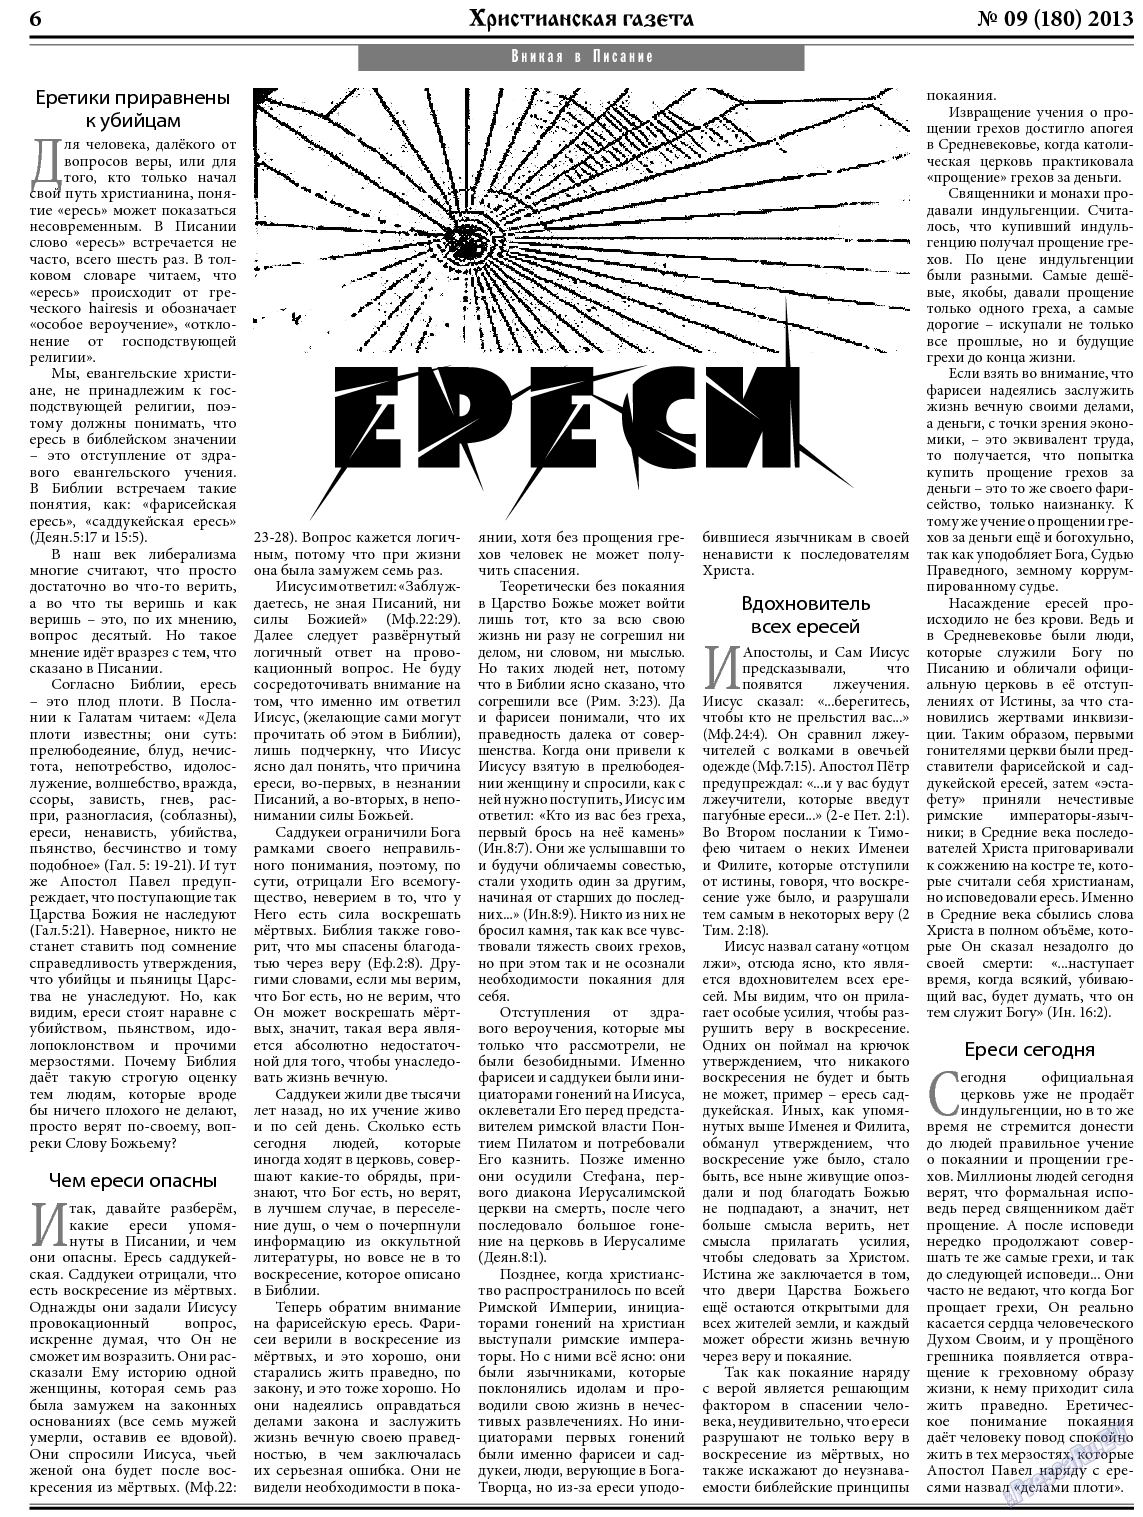 Христианская газета, газета. 2013 №9 стр.6